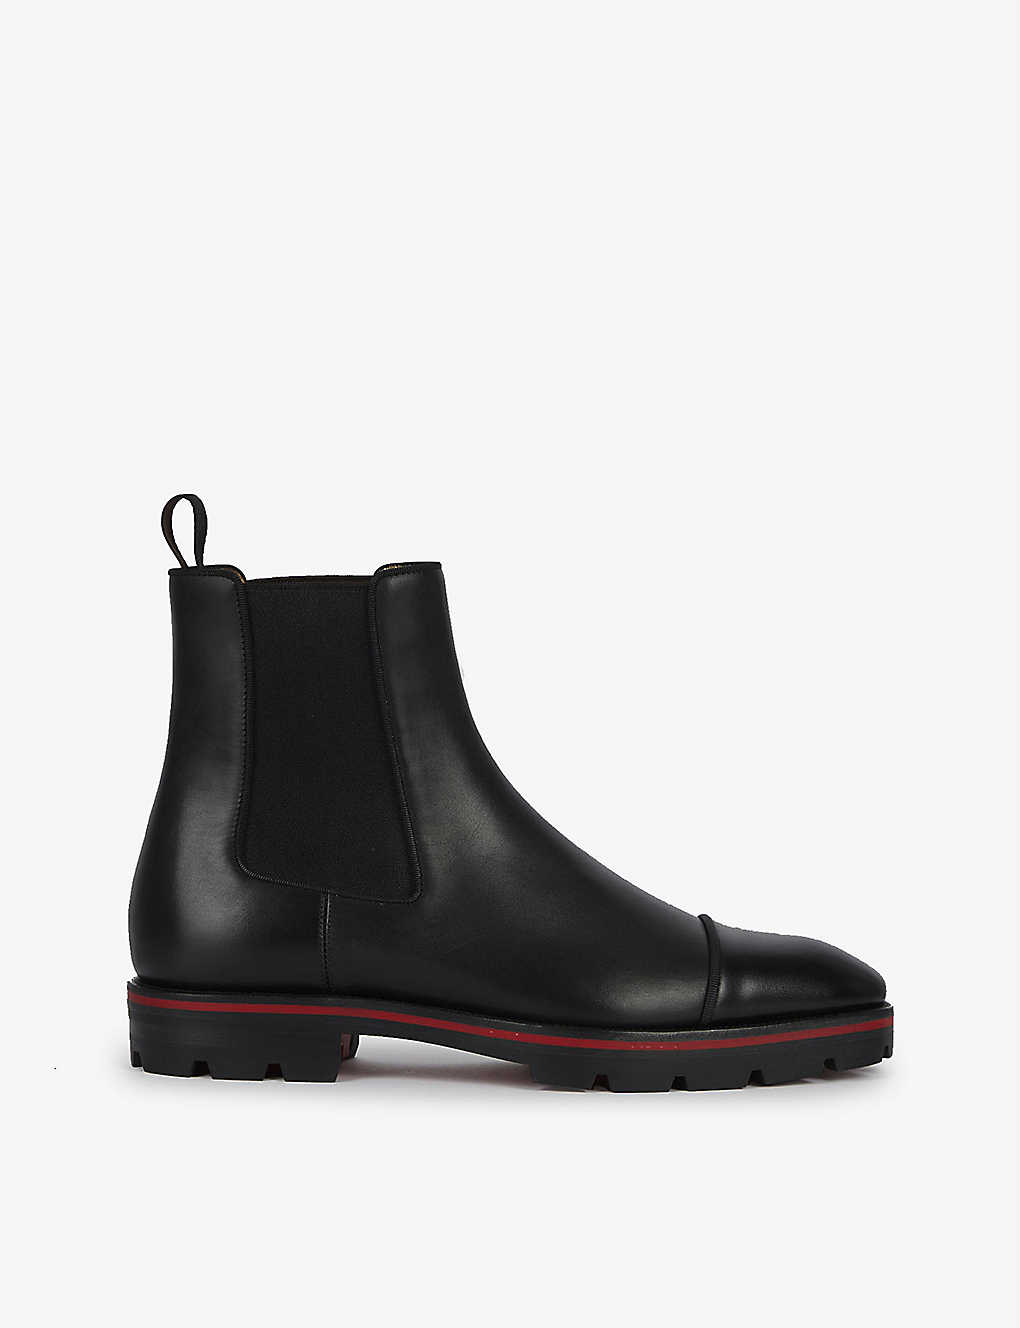 Shop Christian Louboutin Men's Black Melon Leather Ankle Boots